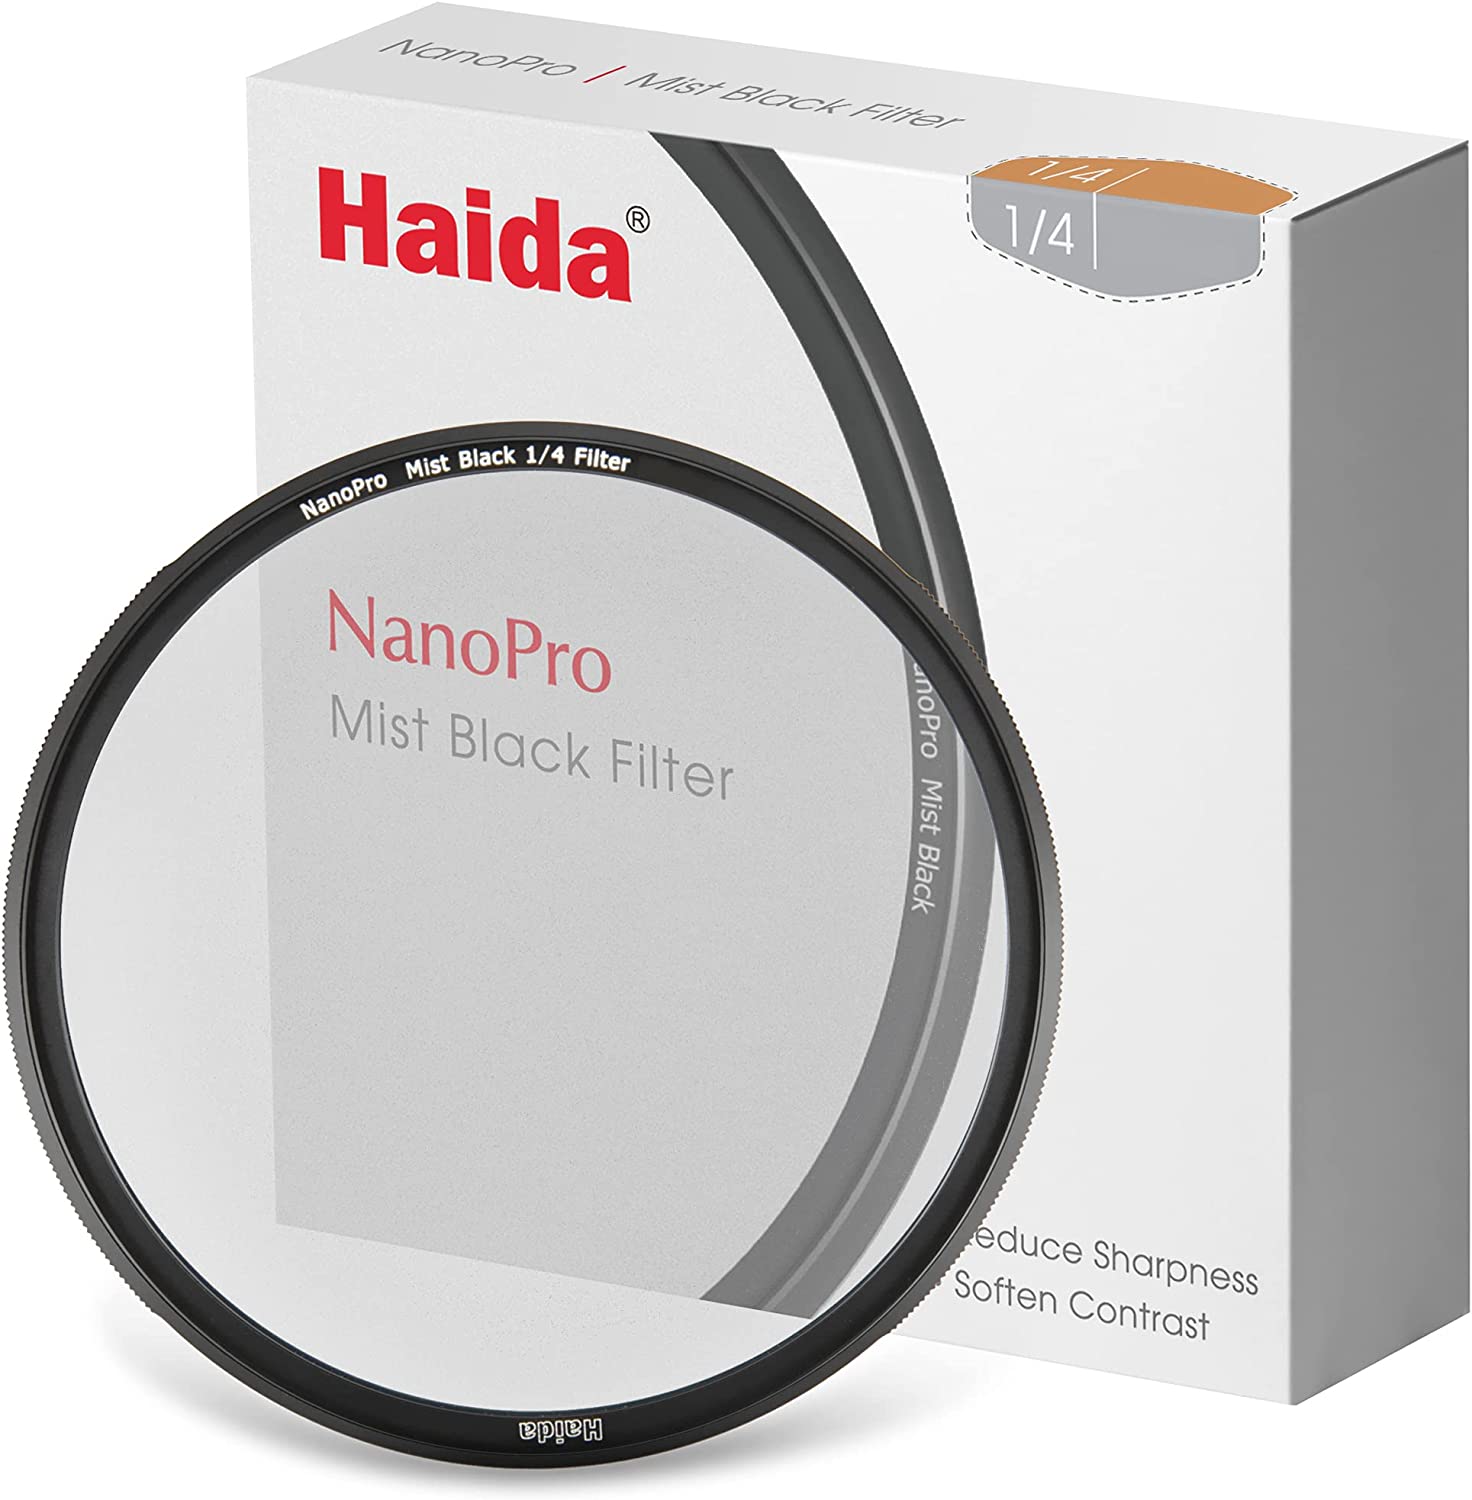 Haida NanoPro Mist Black 1/4 Filtro 62mm